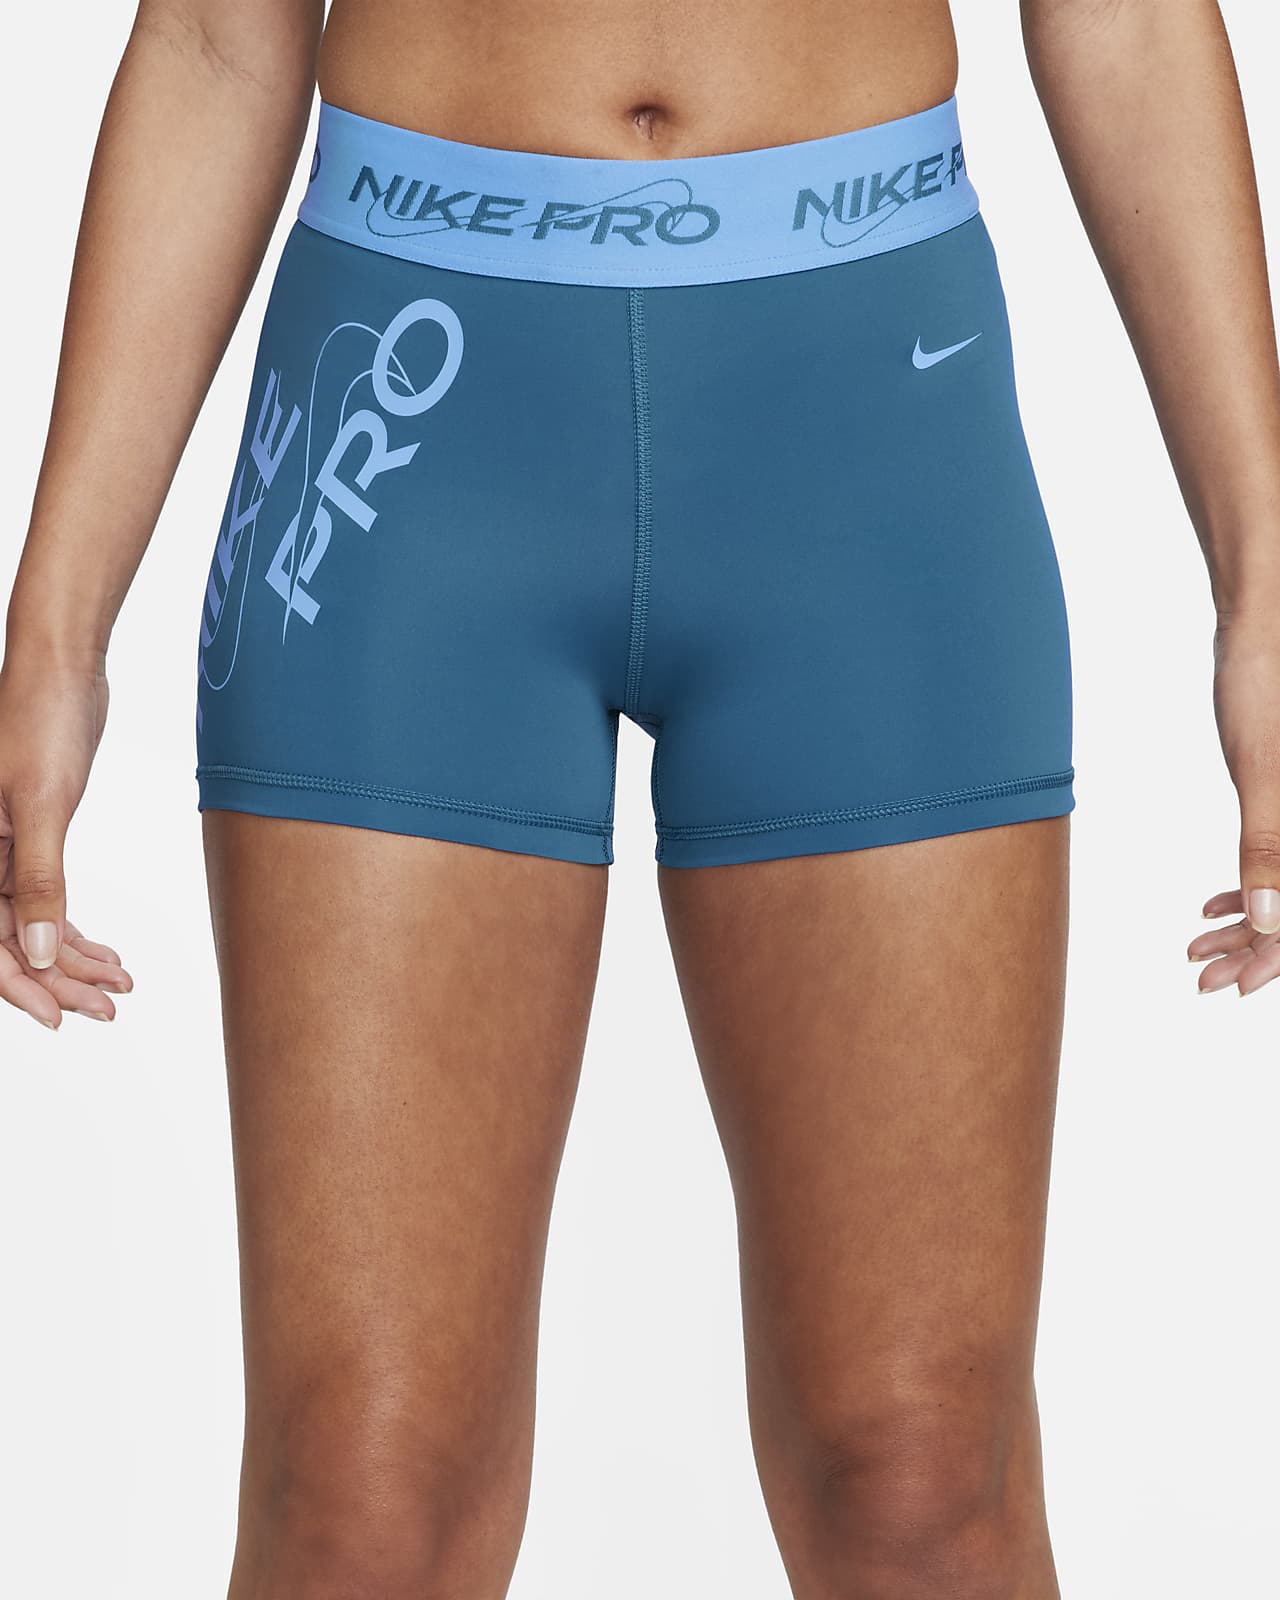 Nike Pro Women's Mid-Rise 3